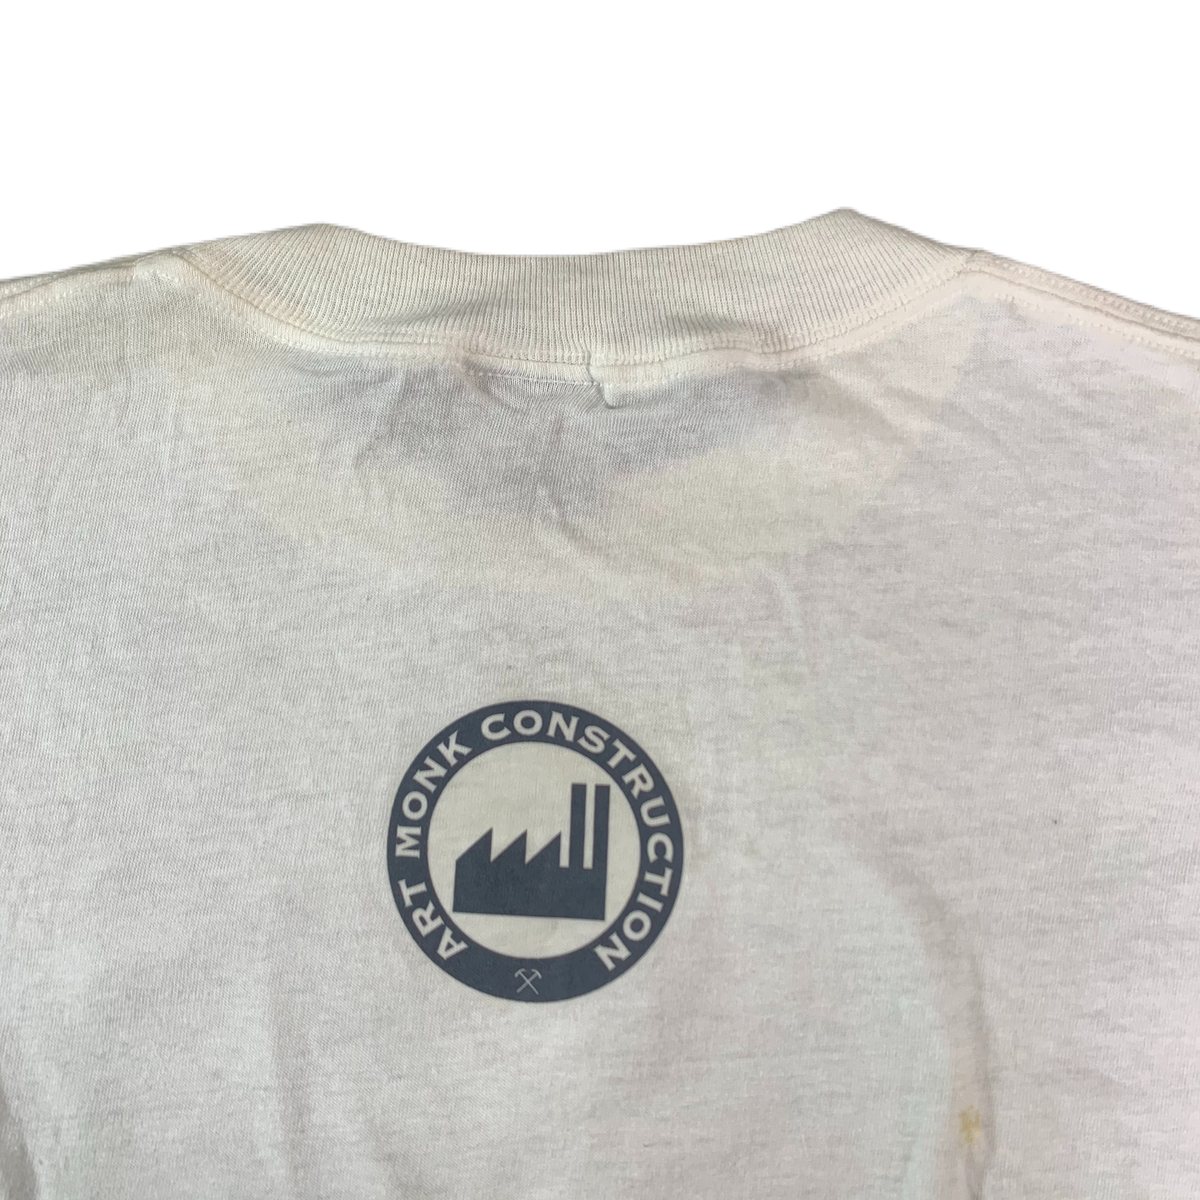 Vintage Seven Storey Mountain &quot;Art Monk Construction&quot; T-Shirt